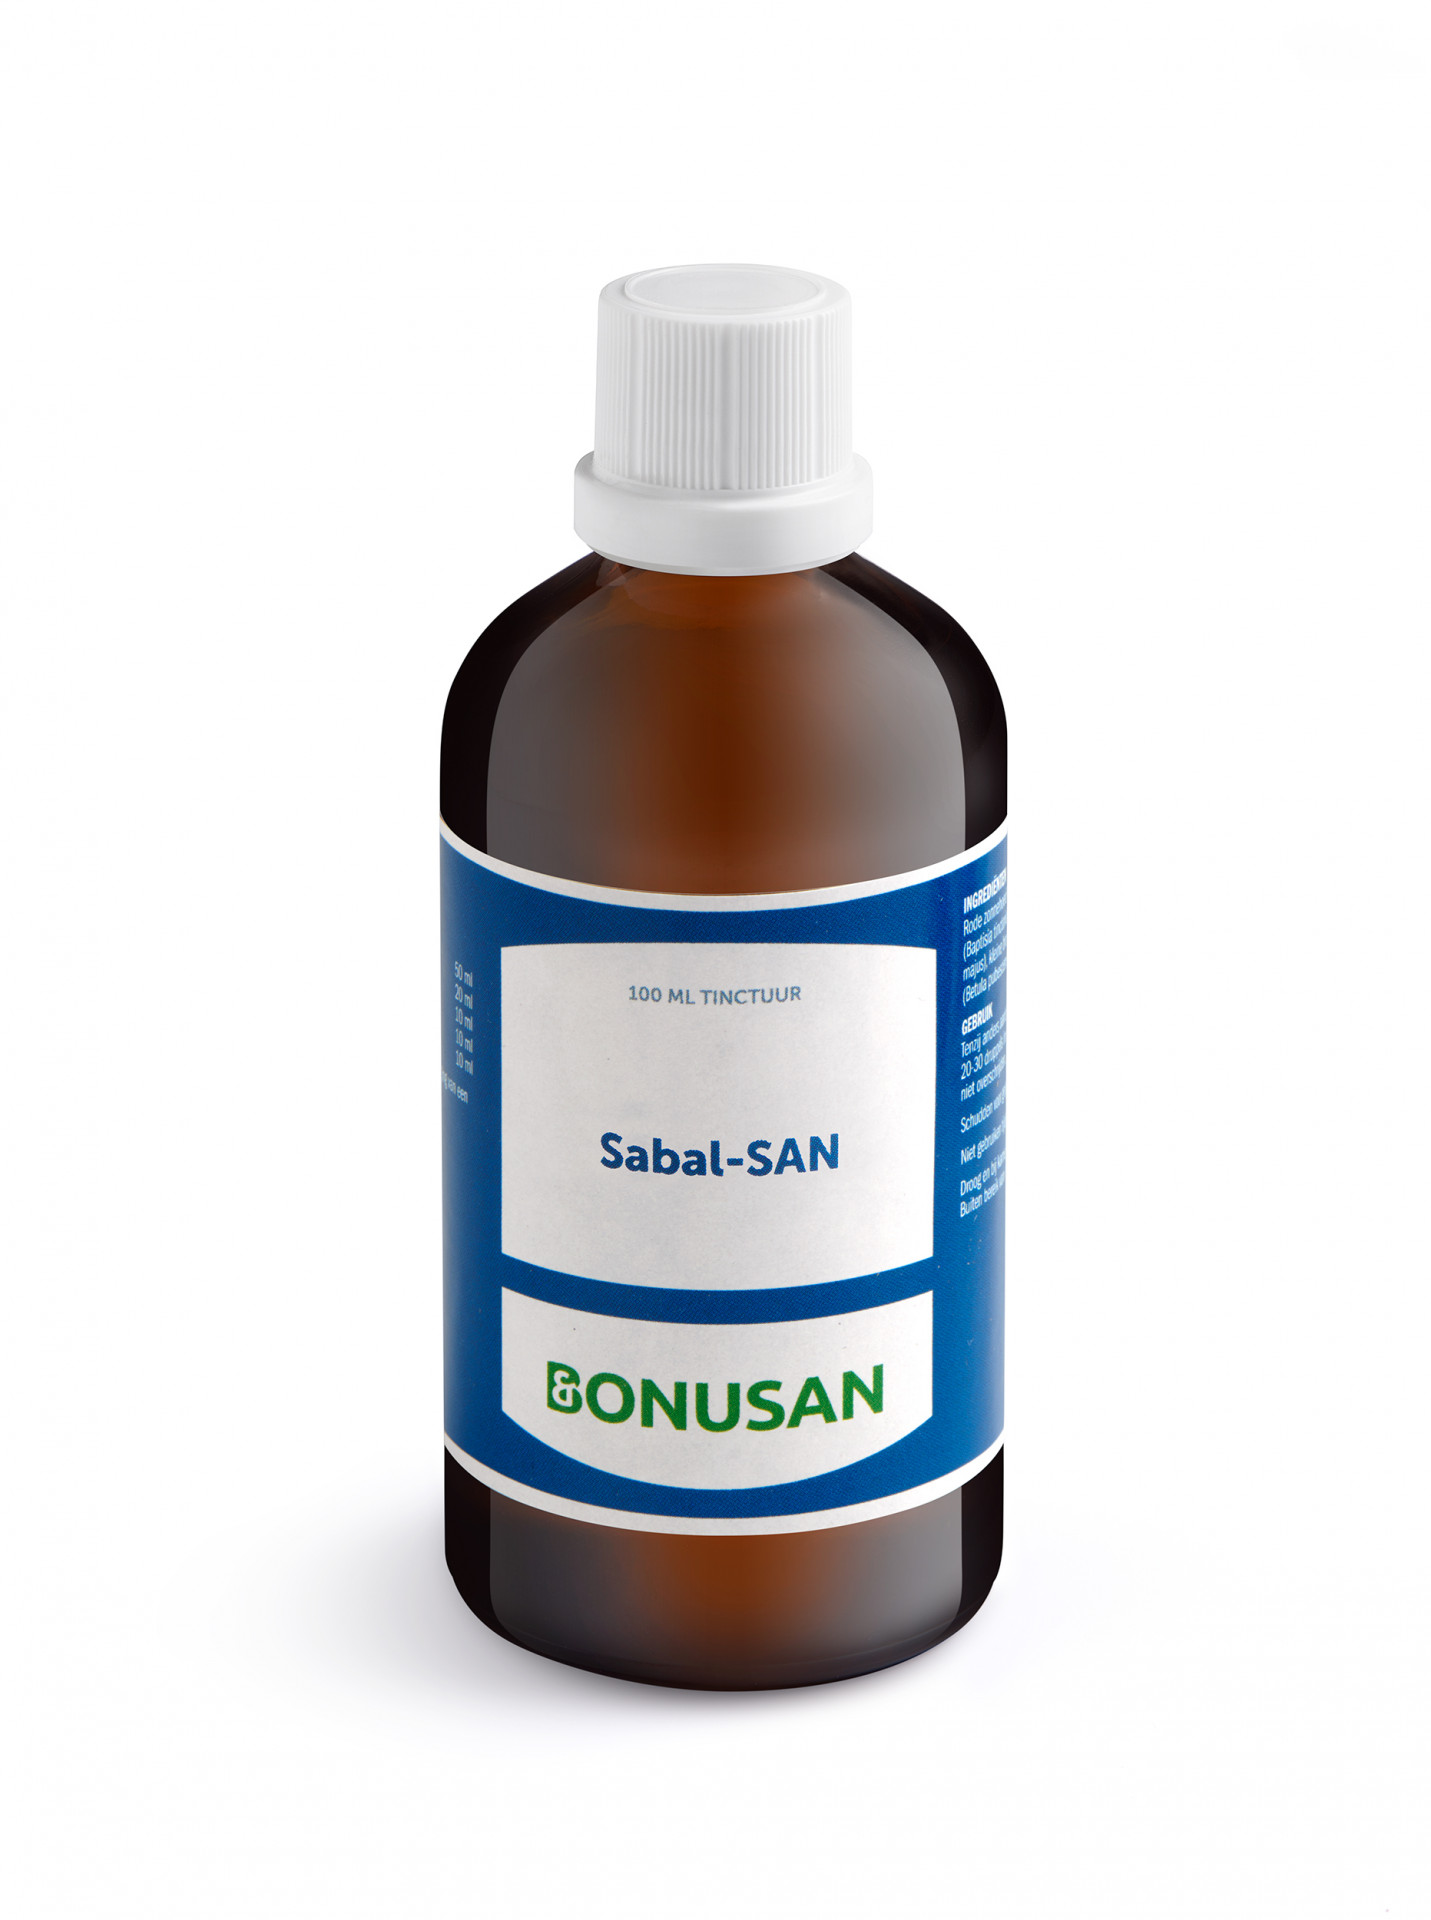 Bonusan - Sabal-SAN (voorheen Prostavisan)